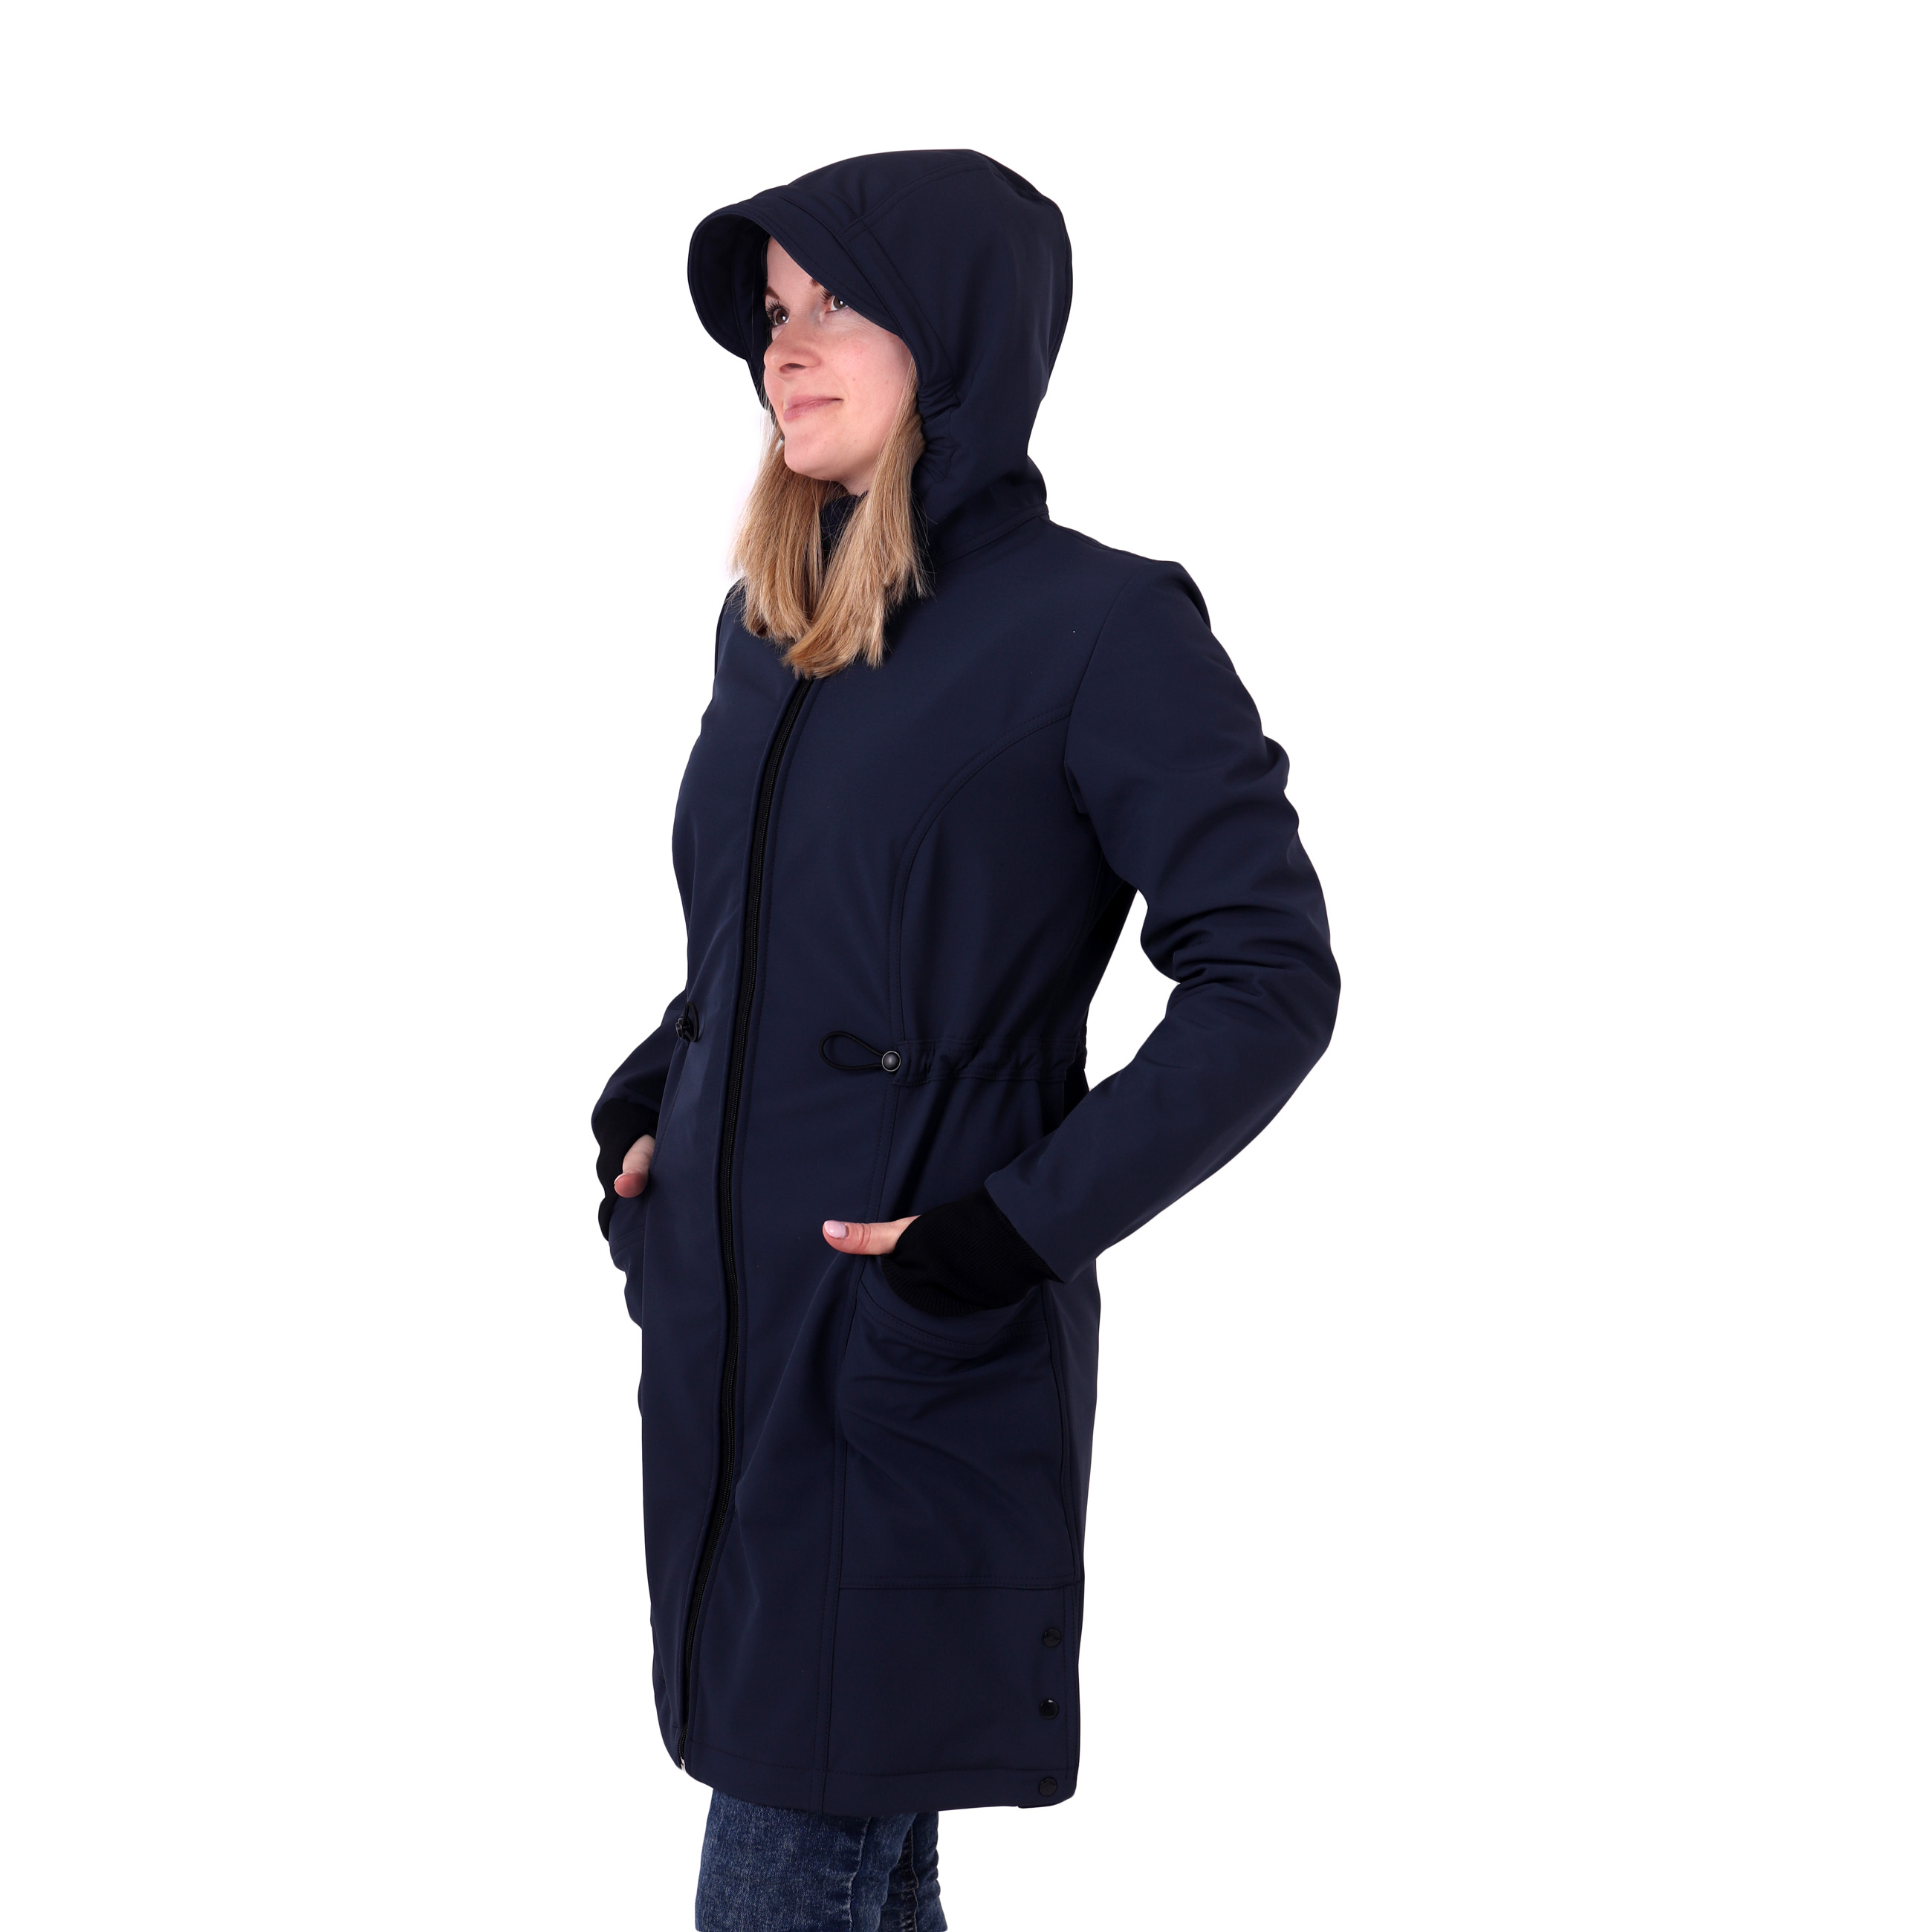 Women´s jackets and coats Hana, dark blue